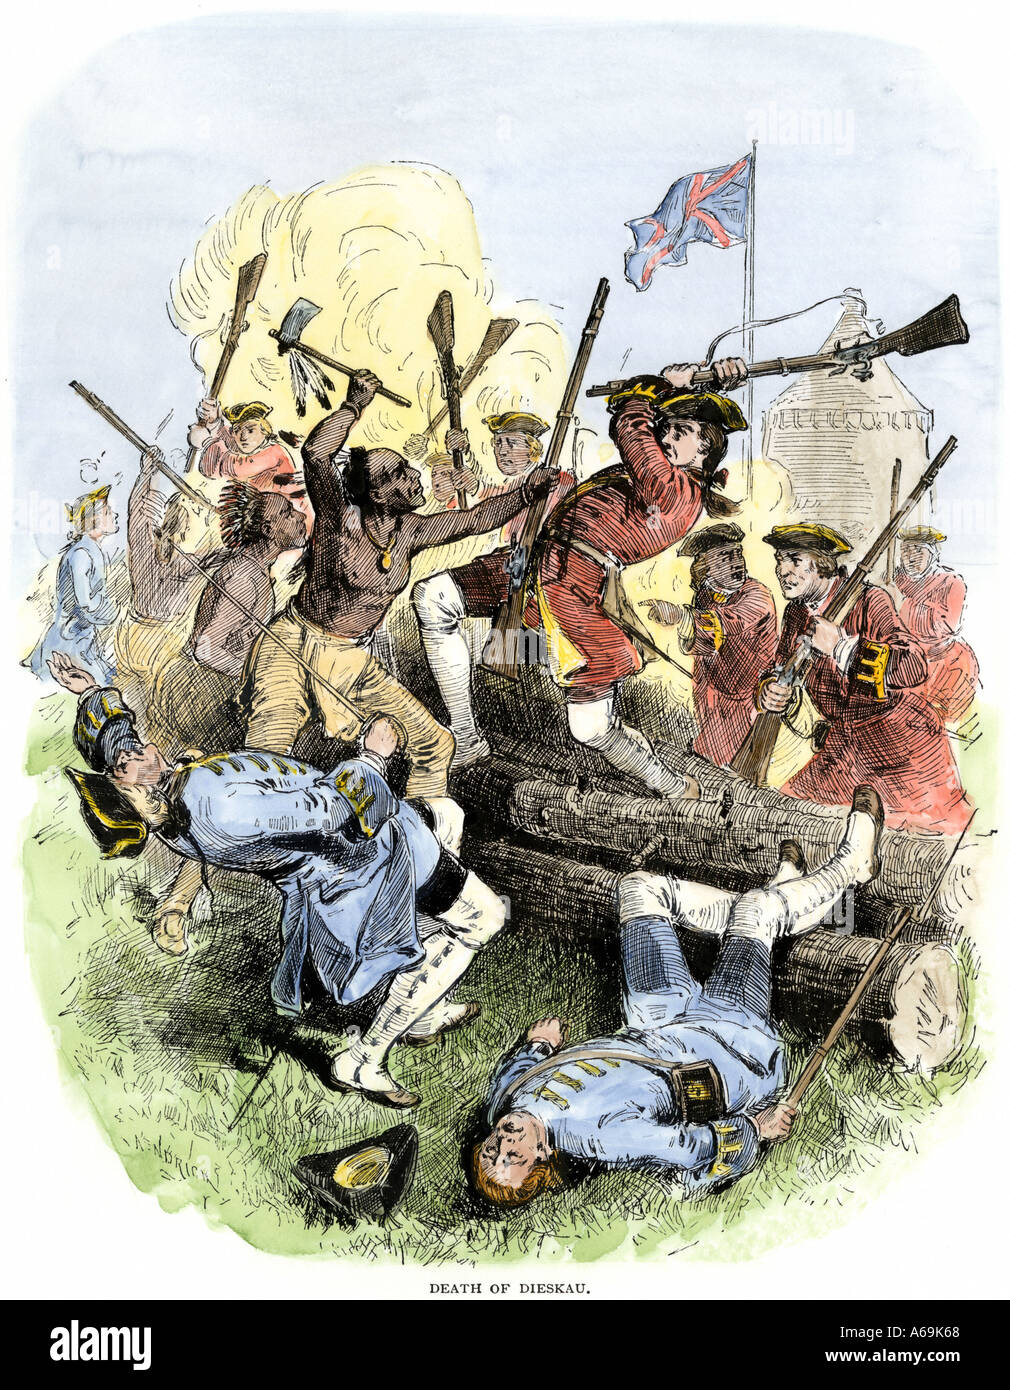 Esercito Inglese hanno teso una imboscata nei pressi del lago George New York durante la guerra di indiano e francese 1755. Colorate a mano la xilografia Foto Stock